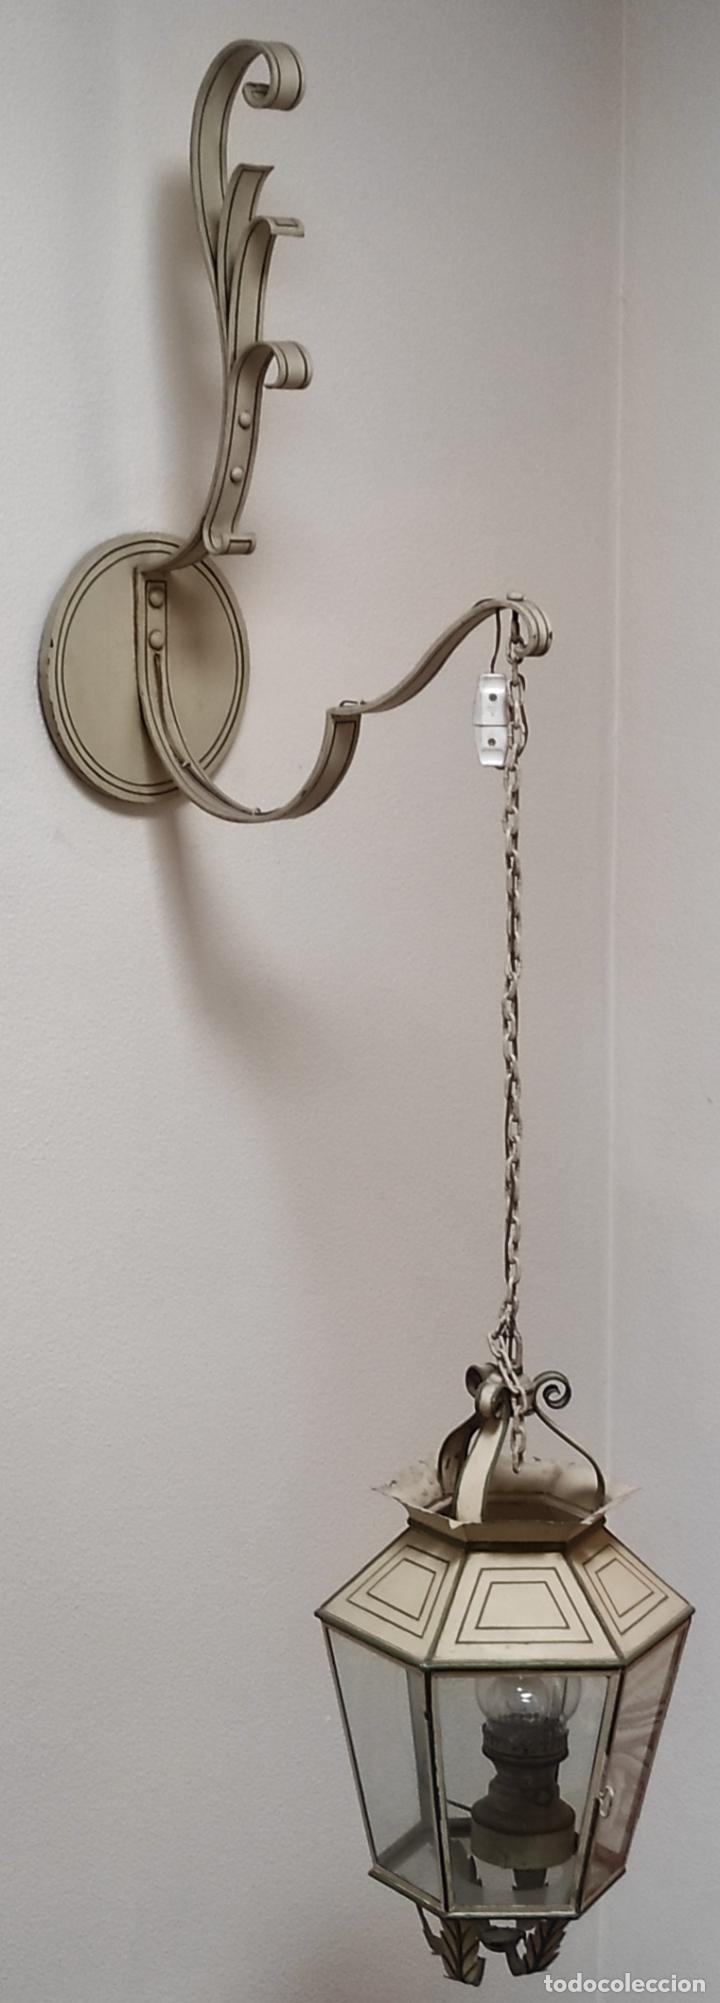 Antigüedades: Preciosa Lámpara Farol con Soporte - Fanal Hierro Pintado - Quinqué Interior - Electrificado - Foto 3 - 268401049